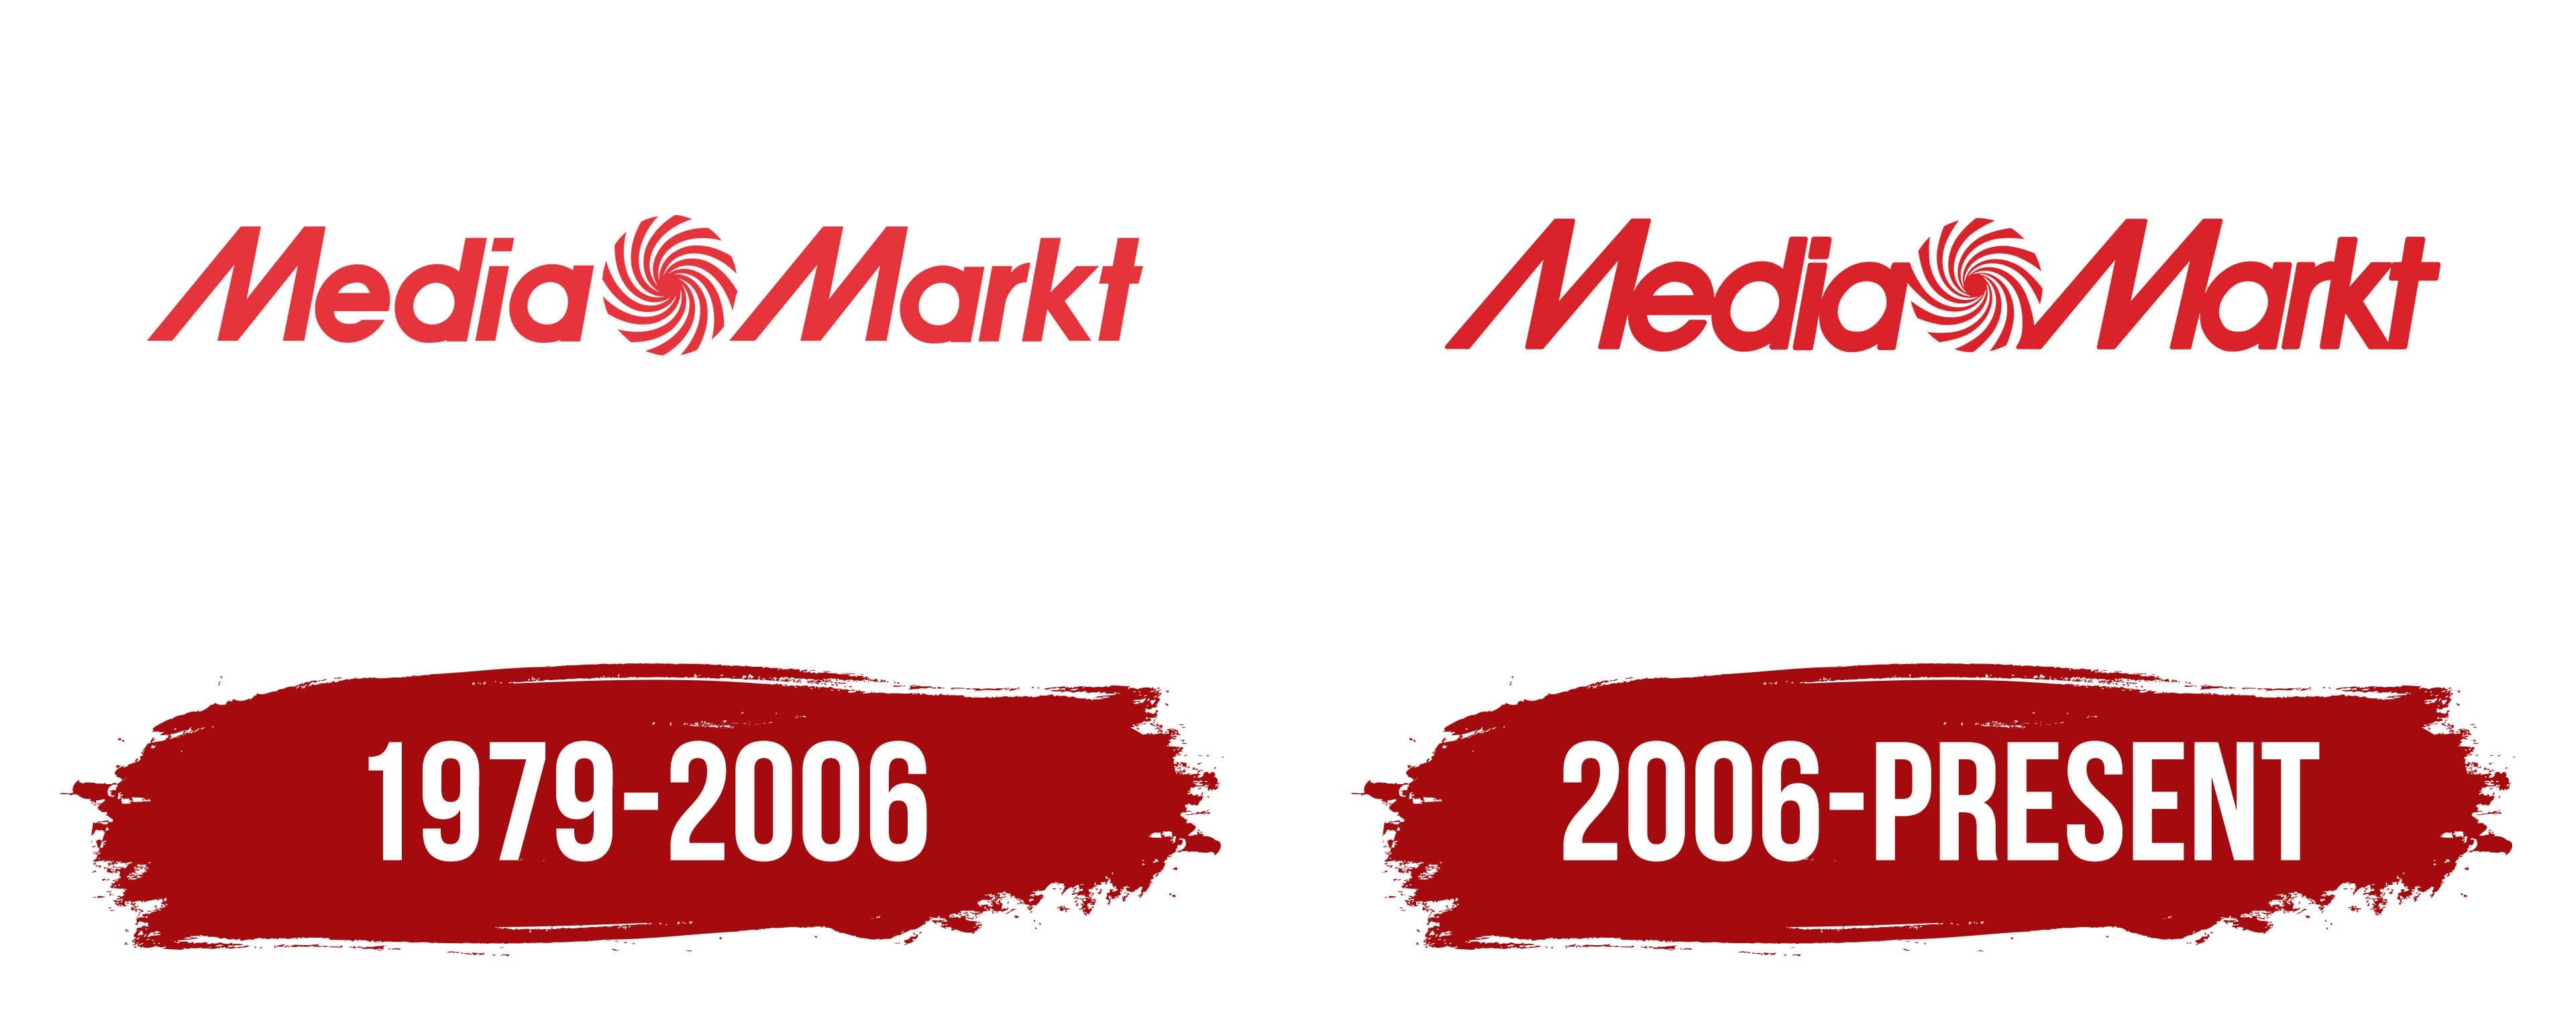 Media Markt Logo, symbol, meaning, history,